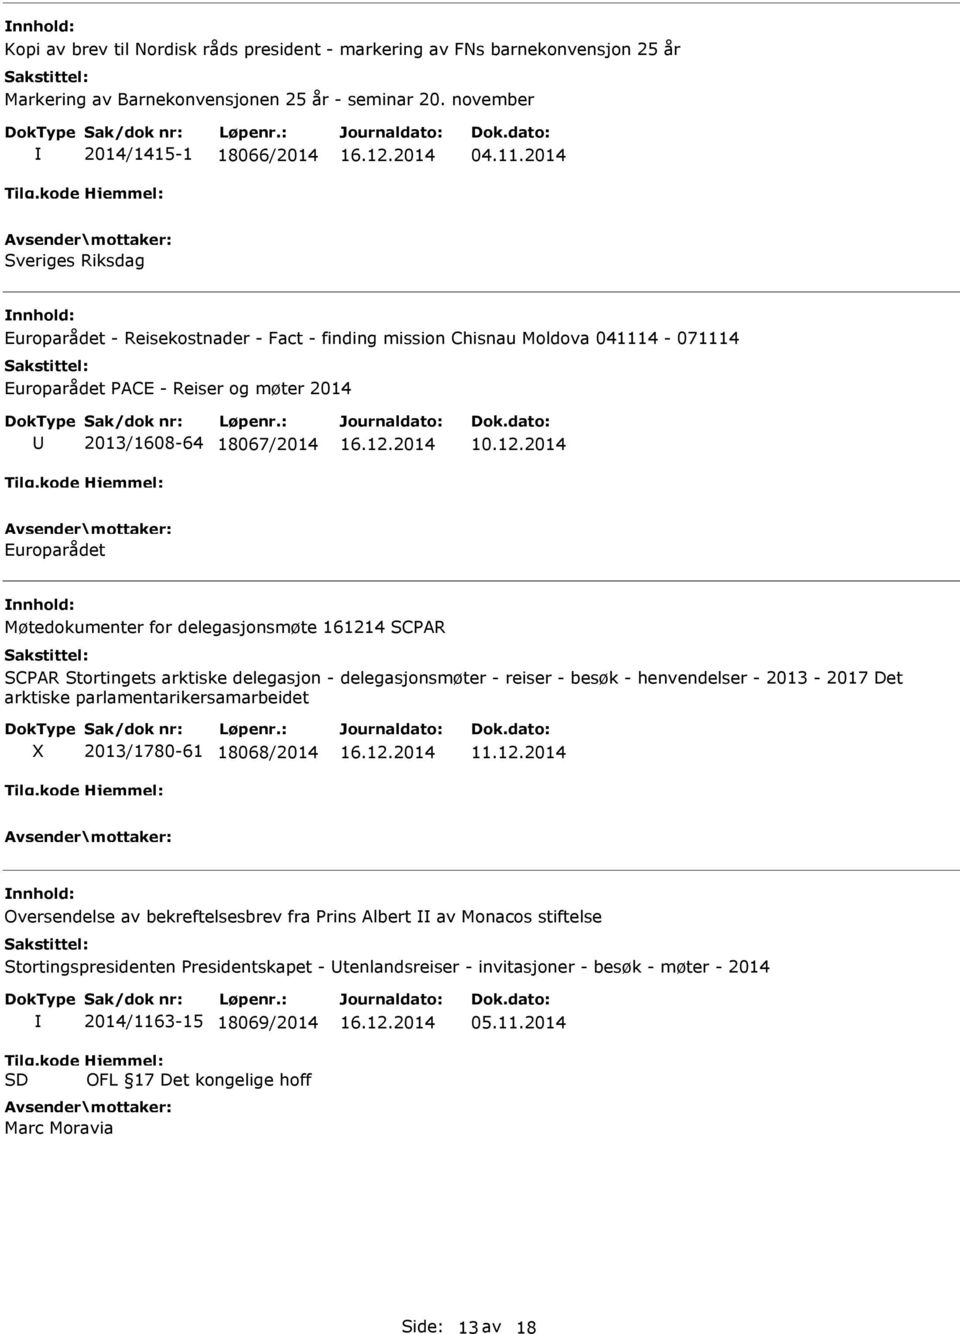 2014 Europarådet Møtedokumenter for delegasjonsmøte 161214 SCPAR SCPAR Stortingets arktiske delegasjon - delegasjonsmøter - reiser - besøk - henvendelser - 2013-2017 Det arktiske